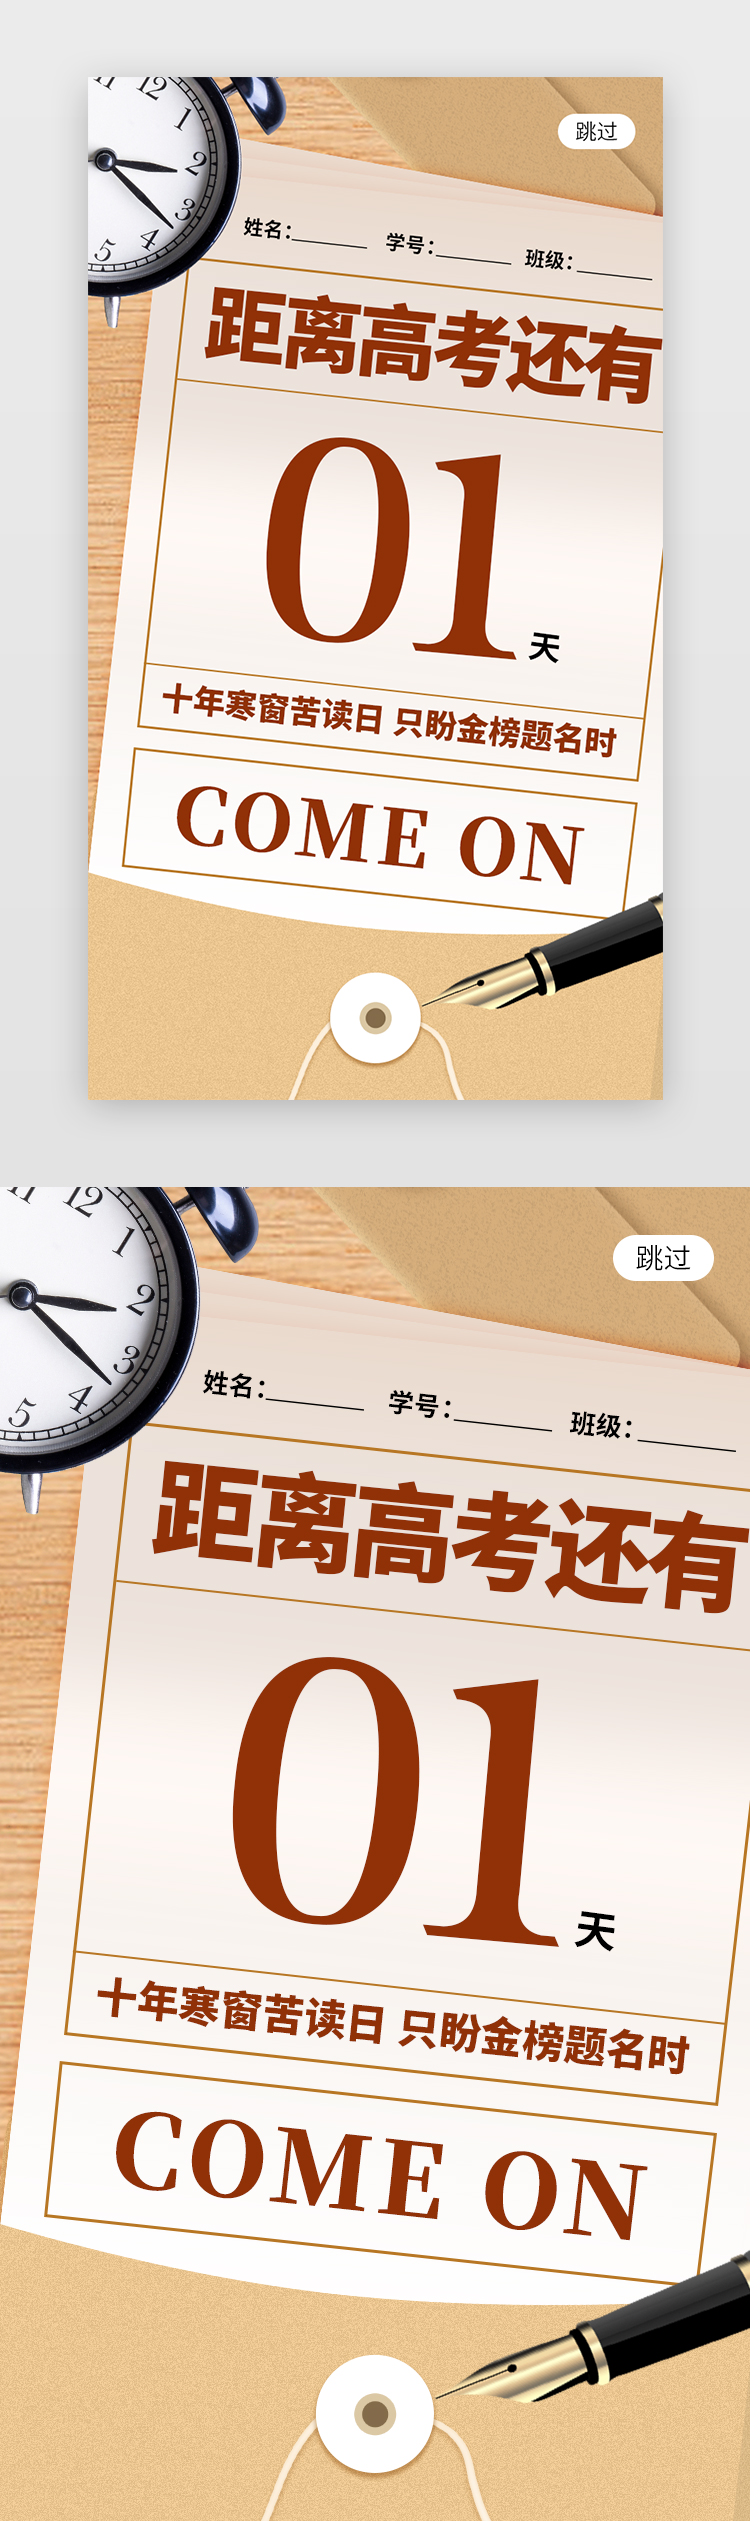 高考倒计时1天app闪屏创意米黄色试卷袋图片